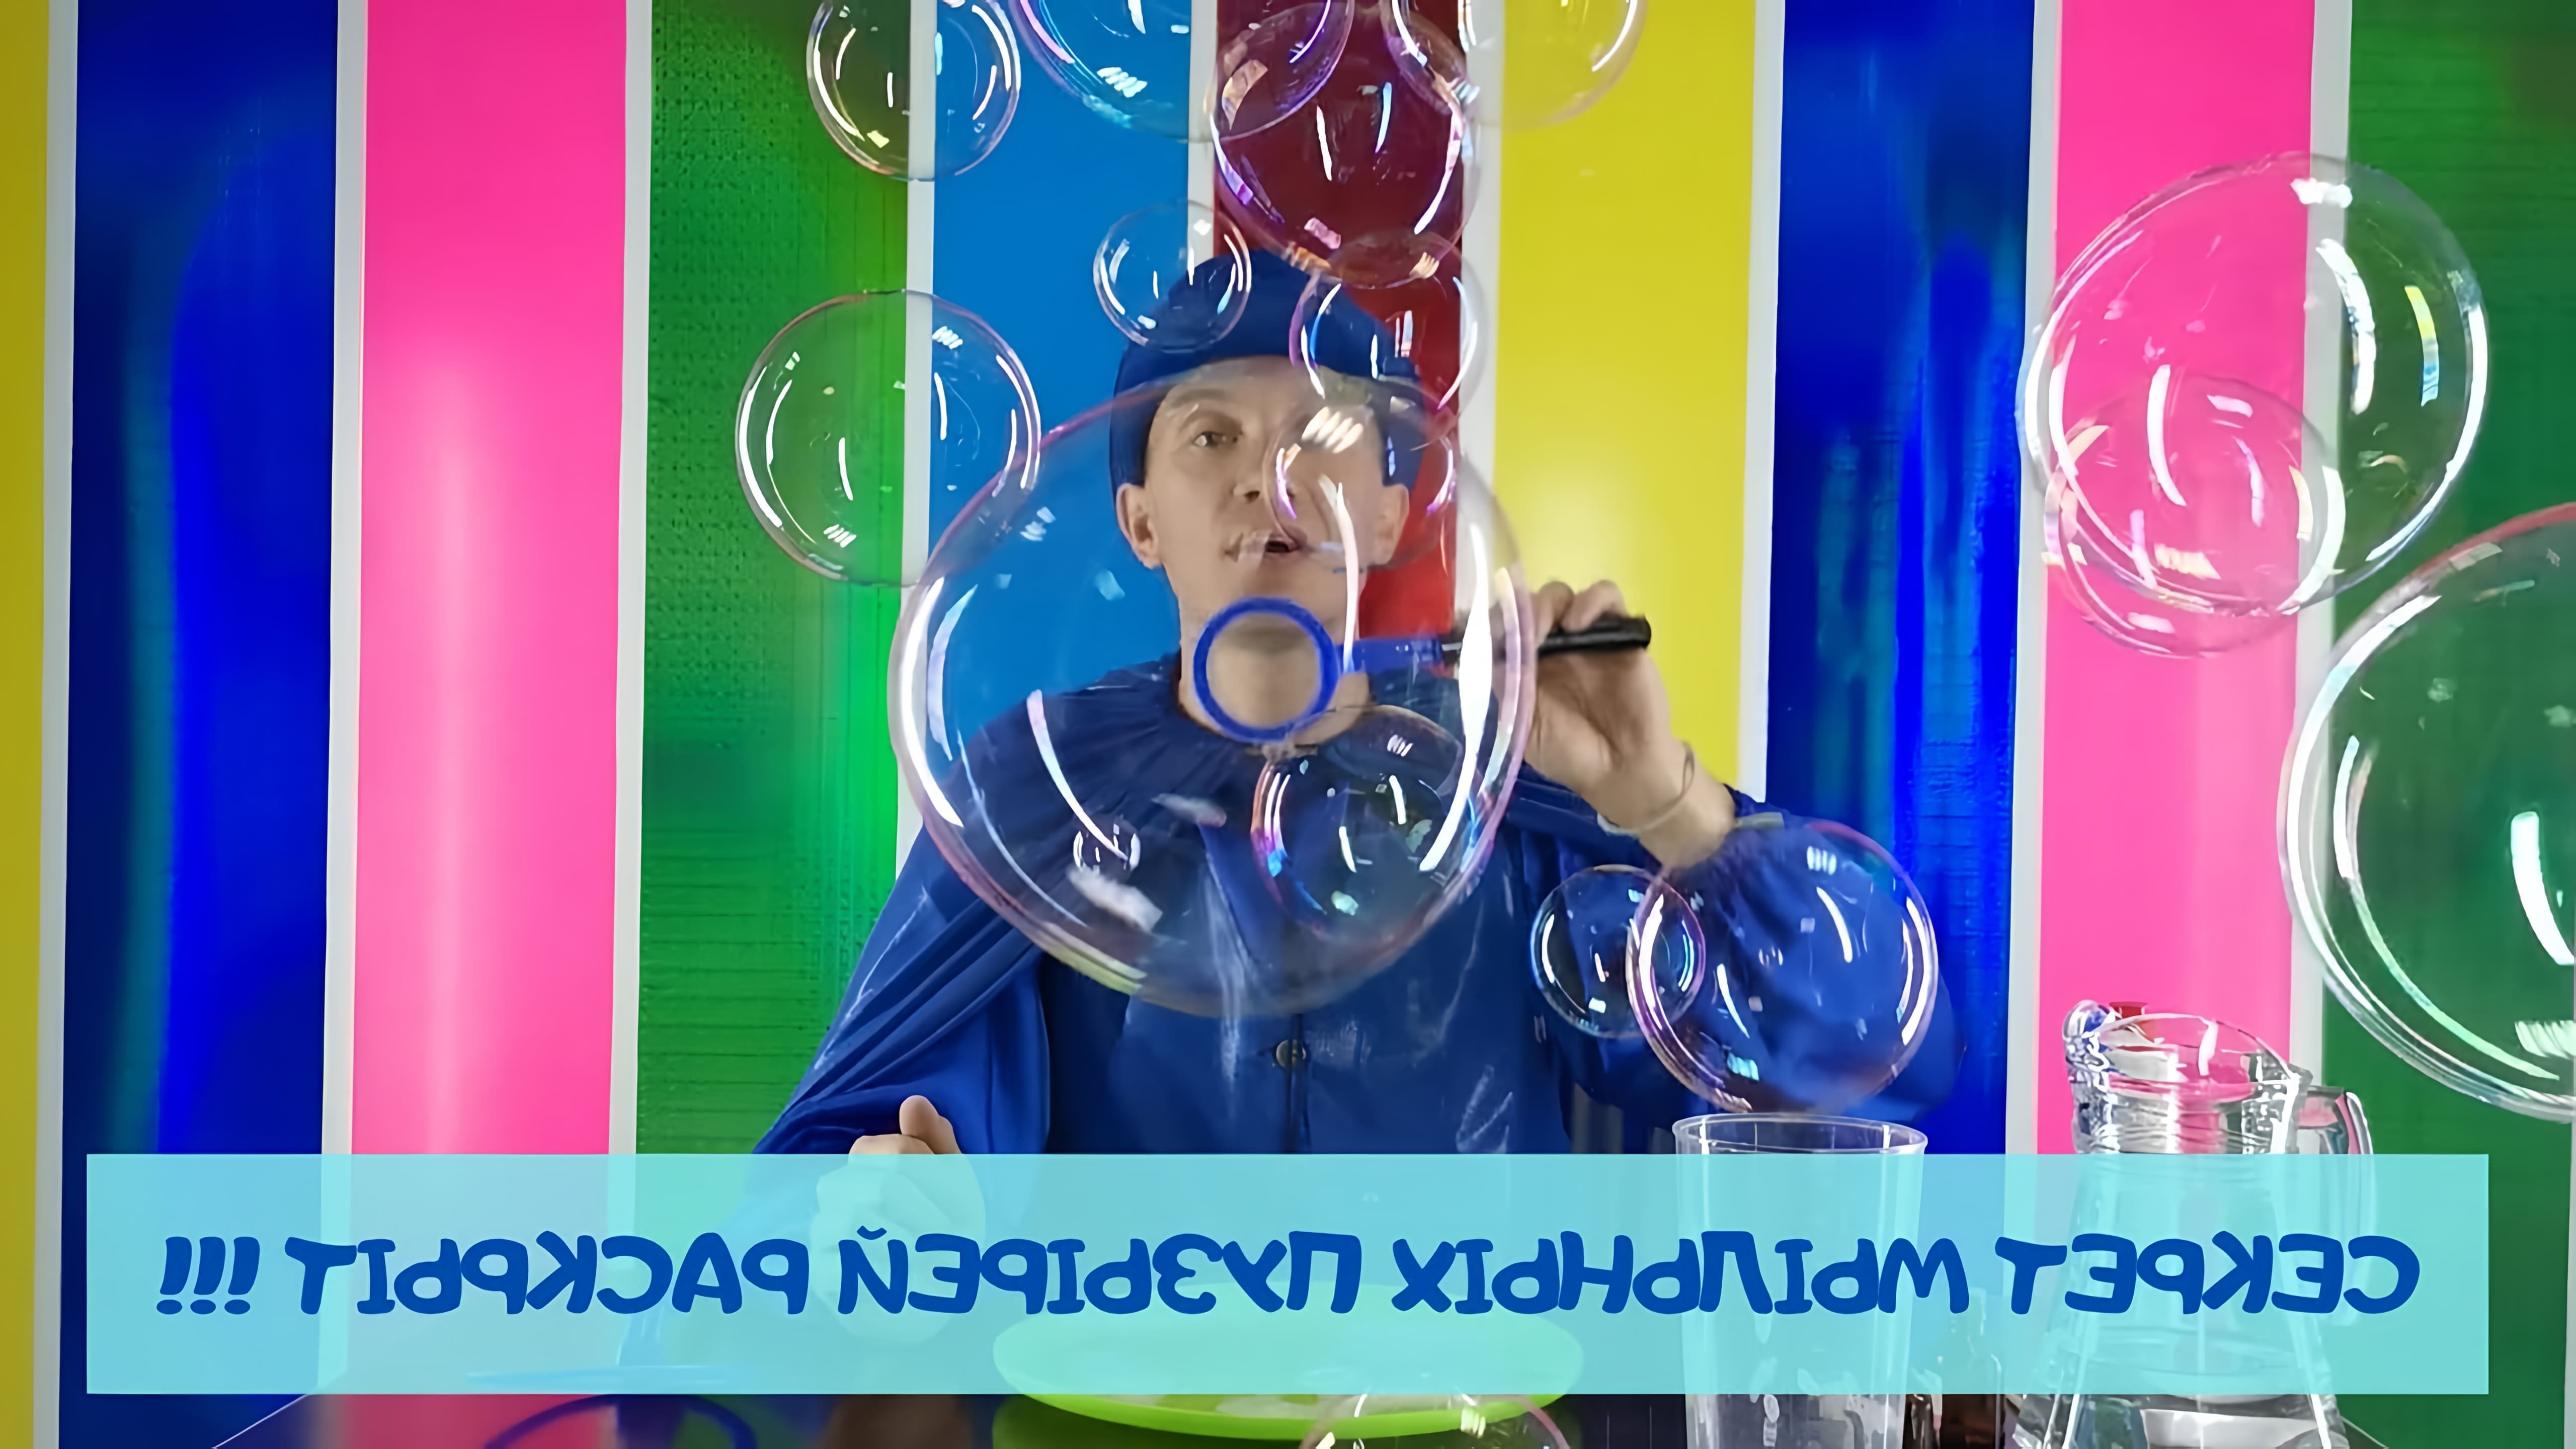 В этом видео Волшебник Пузырик делится рецептом раствора для мыльных пузырей, который можно сделать в домашних условиях